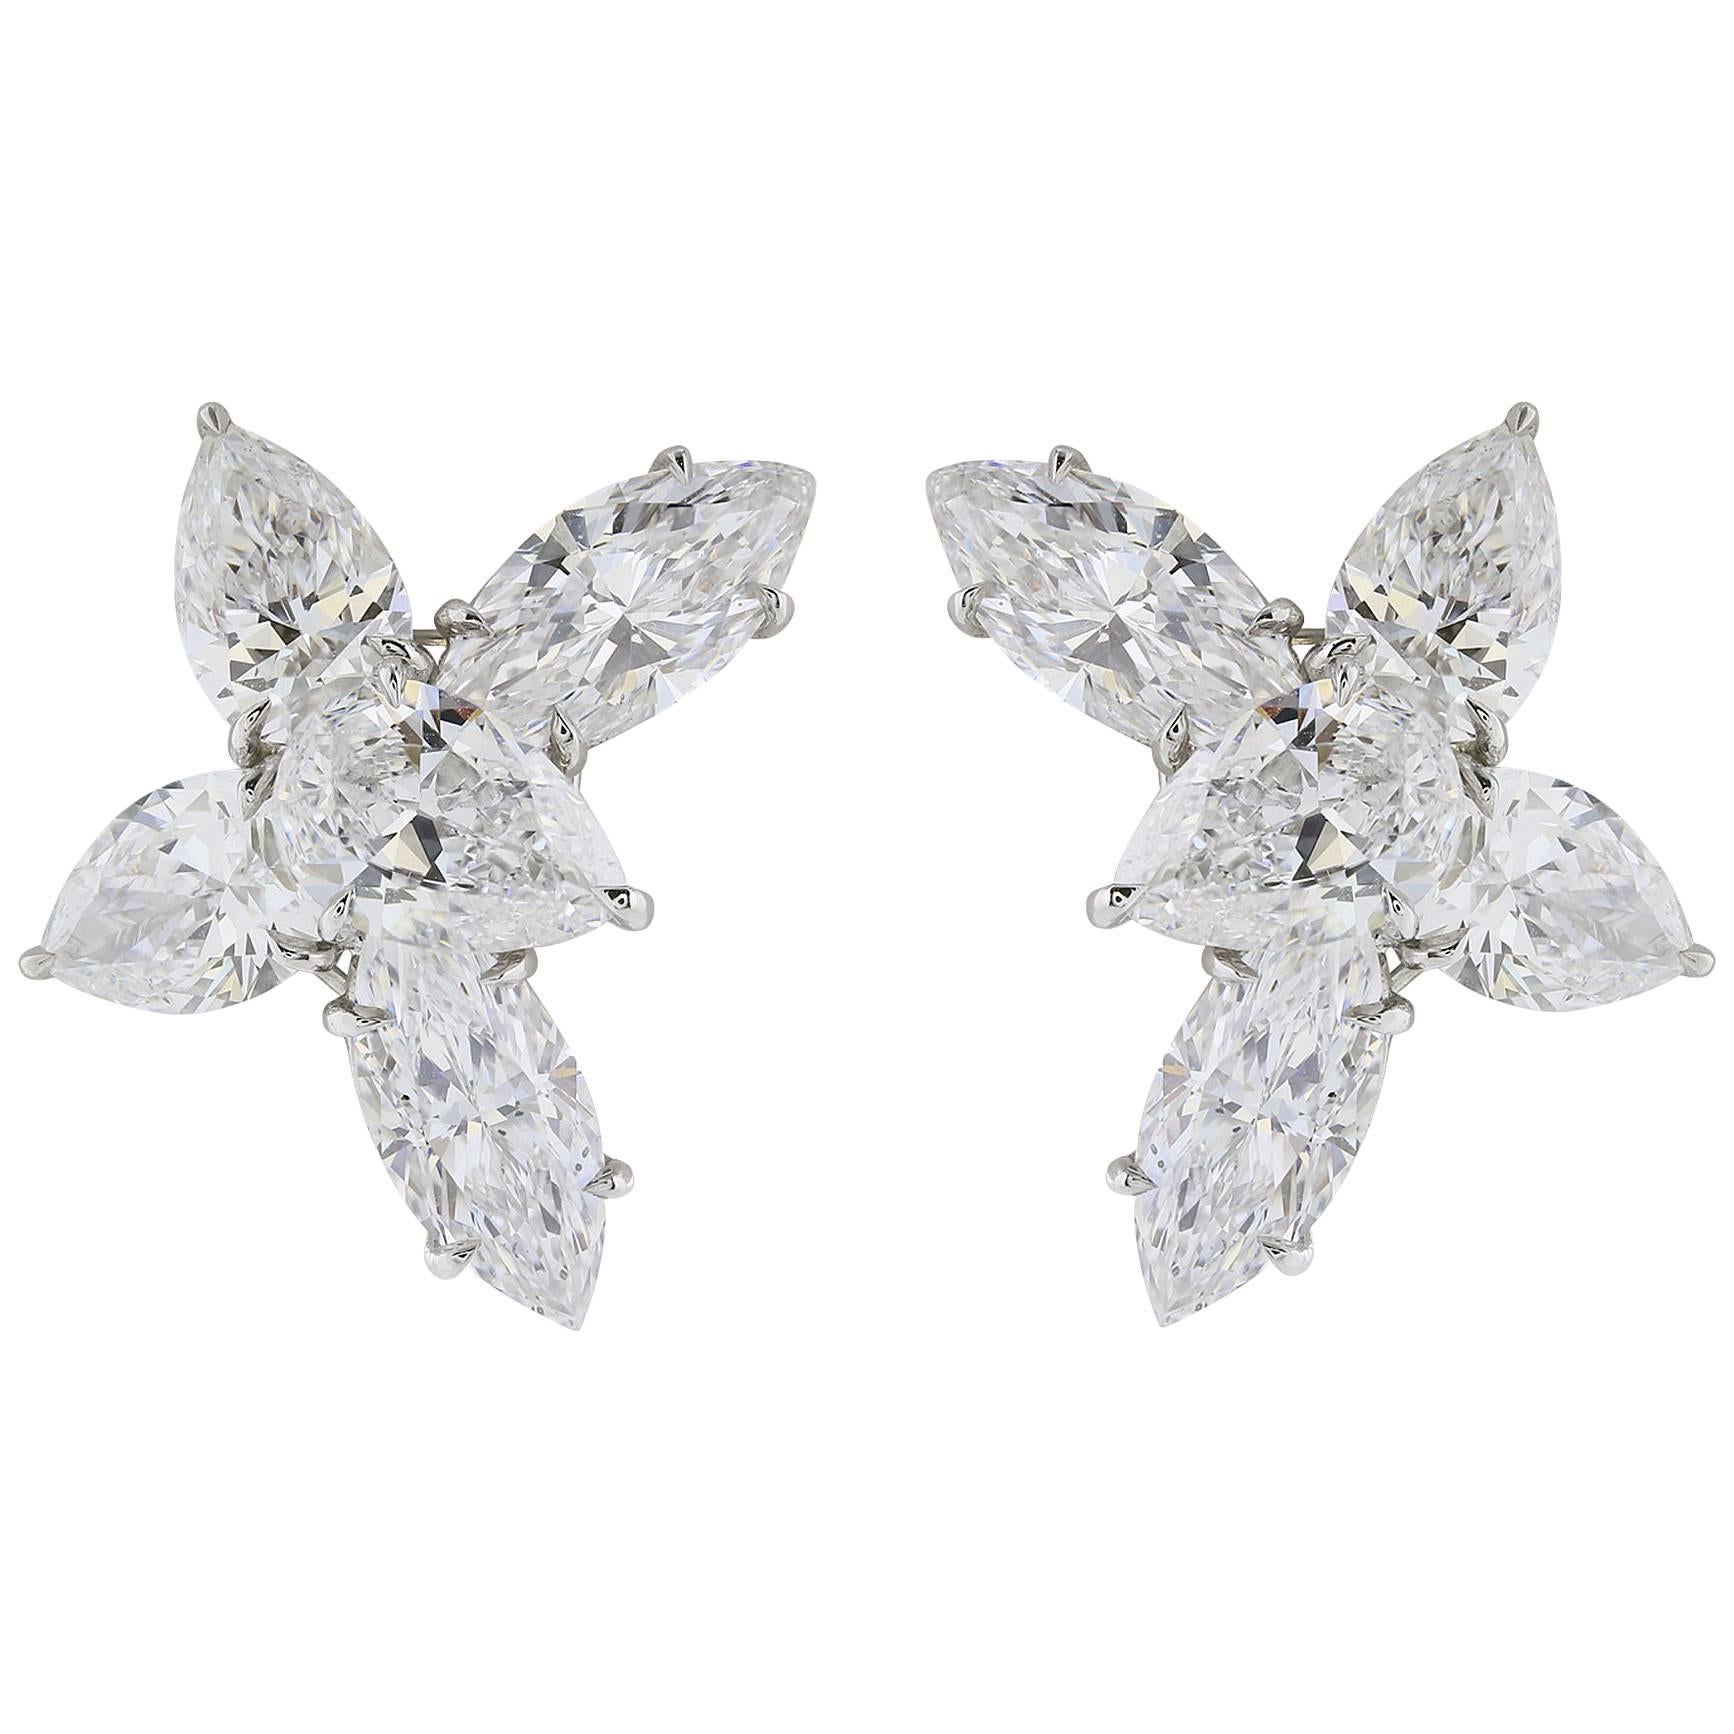 Shreve, Crump & Low 13.06 Carat Fancy Shaped GIA Diamond Earrings For Sale